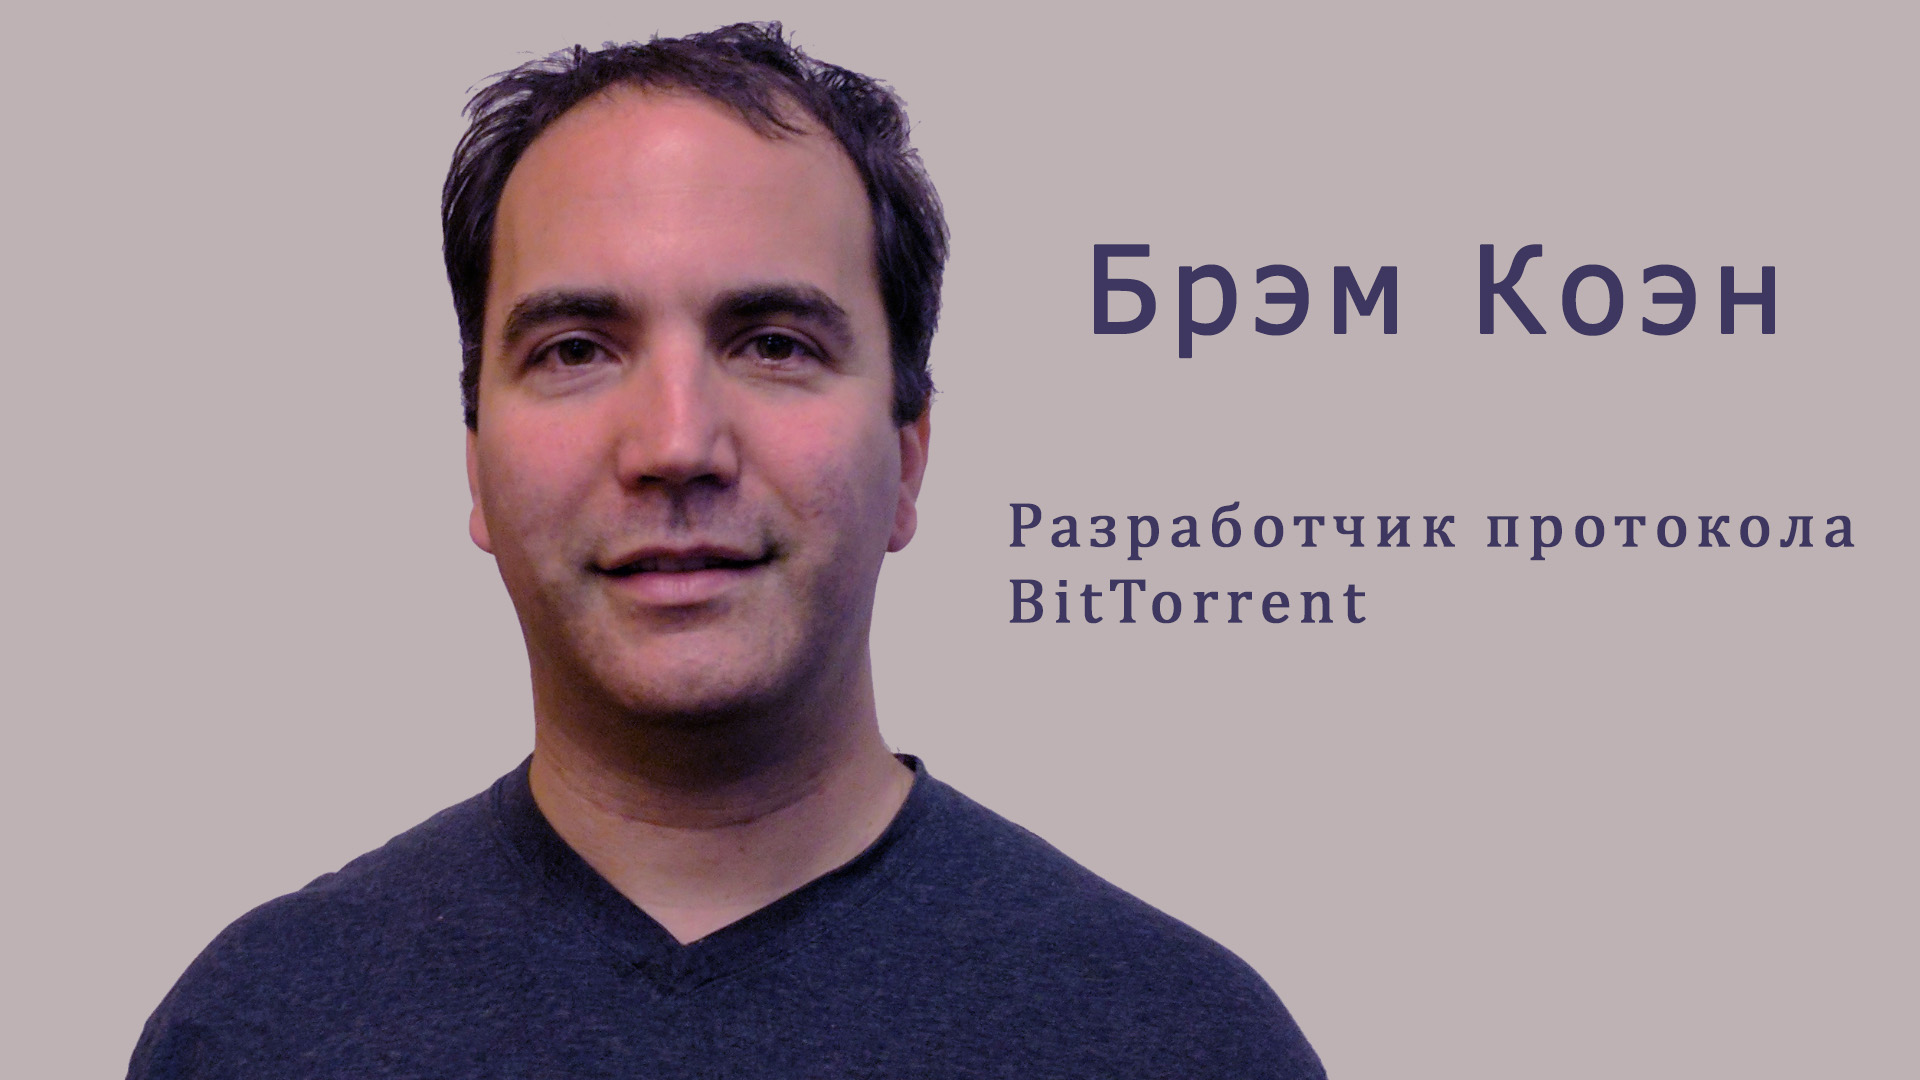 Человек на фото Bram Cohen — создатель протокола BitTorrent для обмена файлами через торренты.